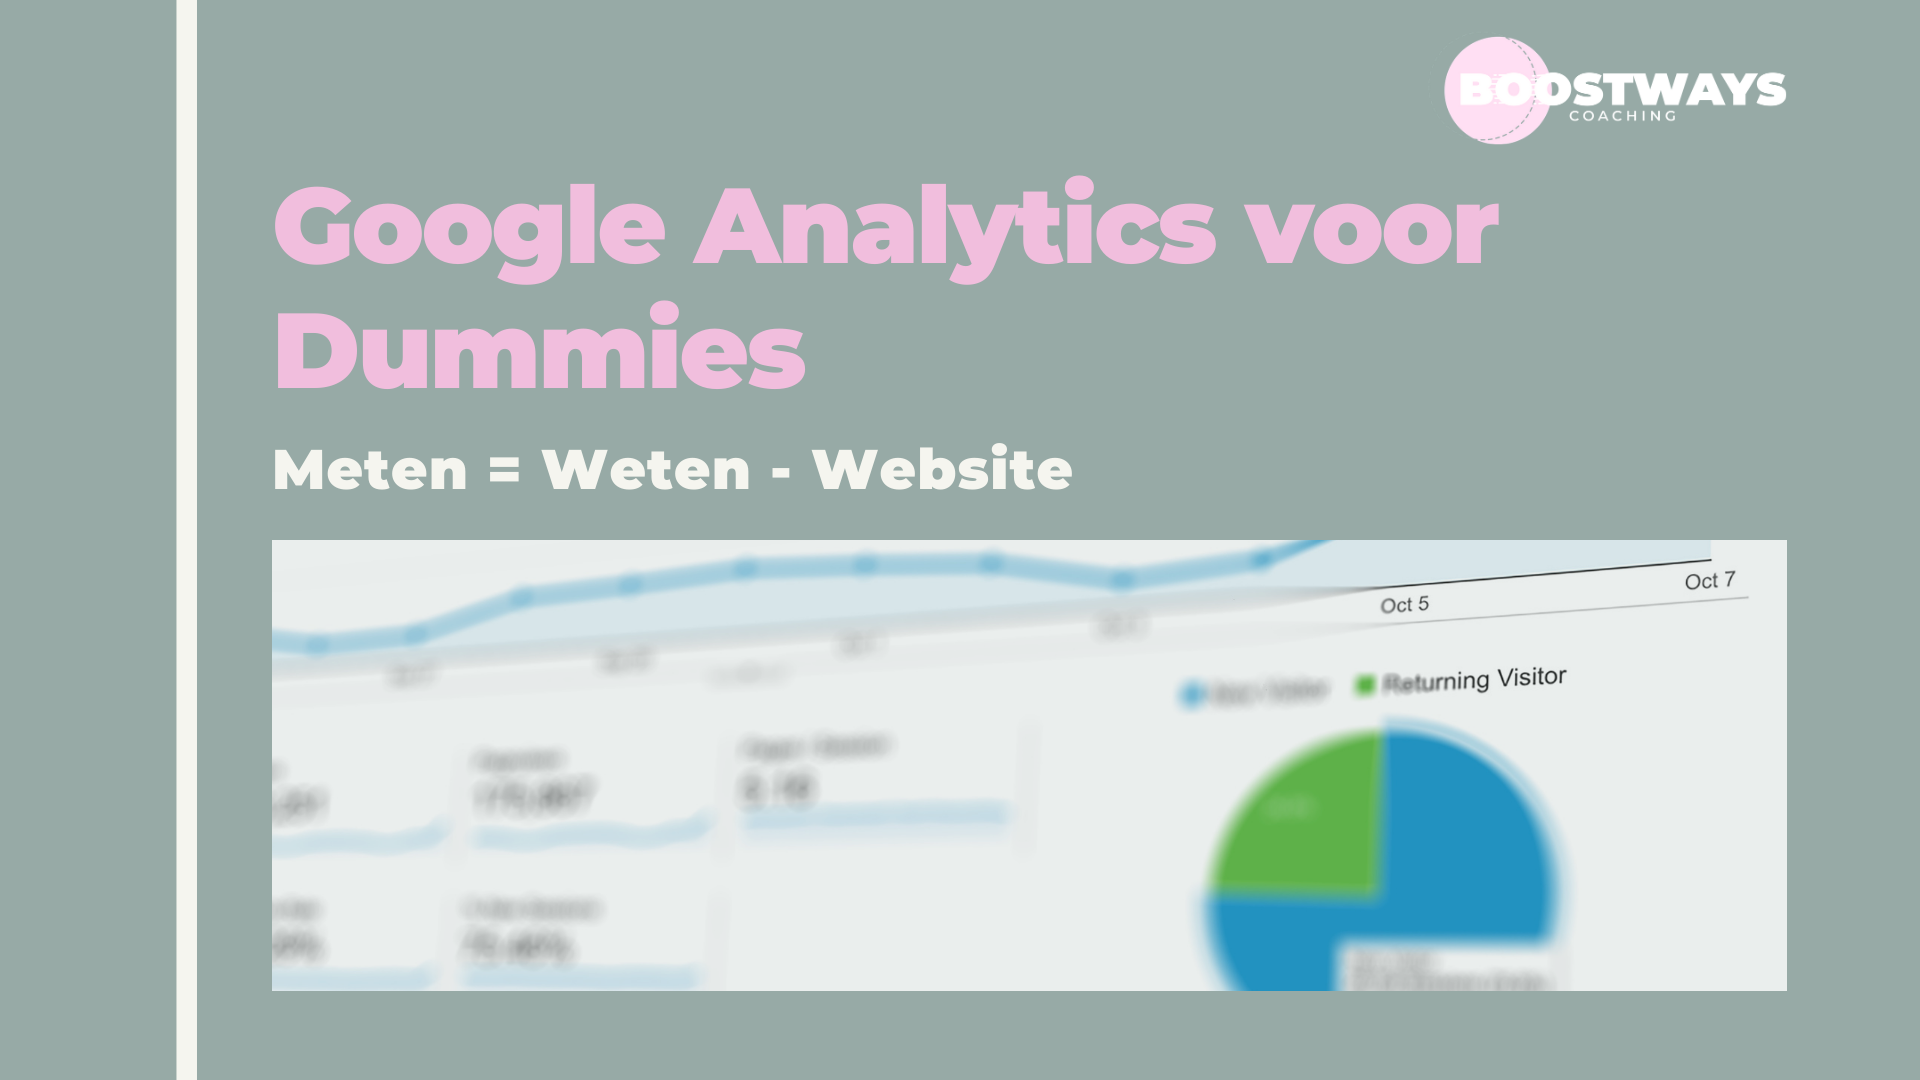 Google Analytics uitgelegd voor Dummies